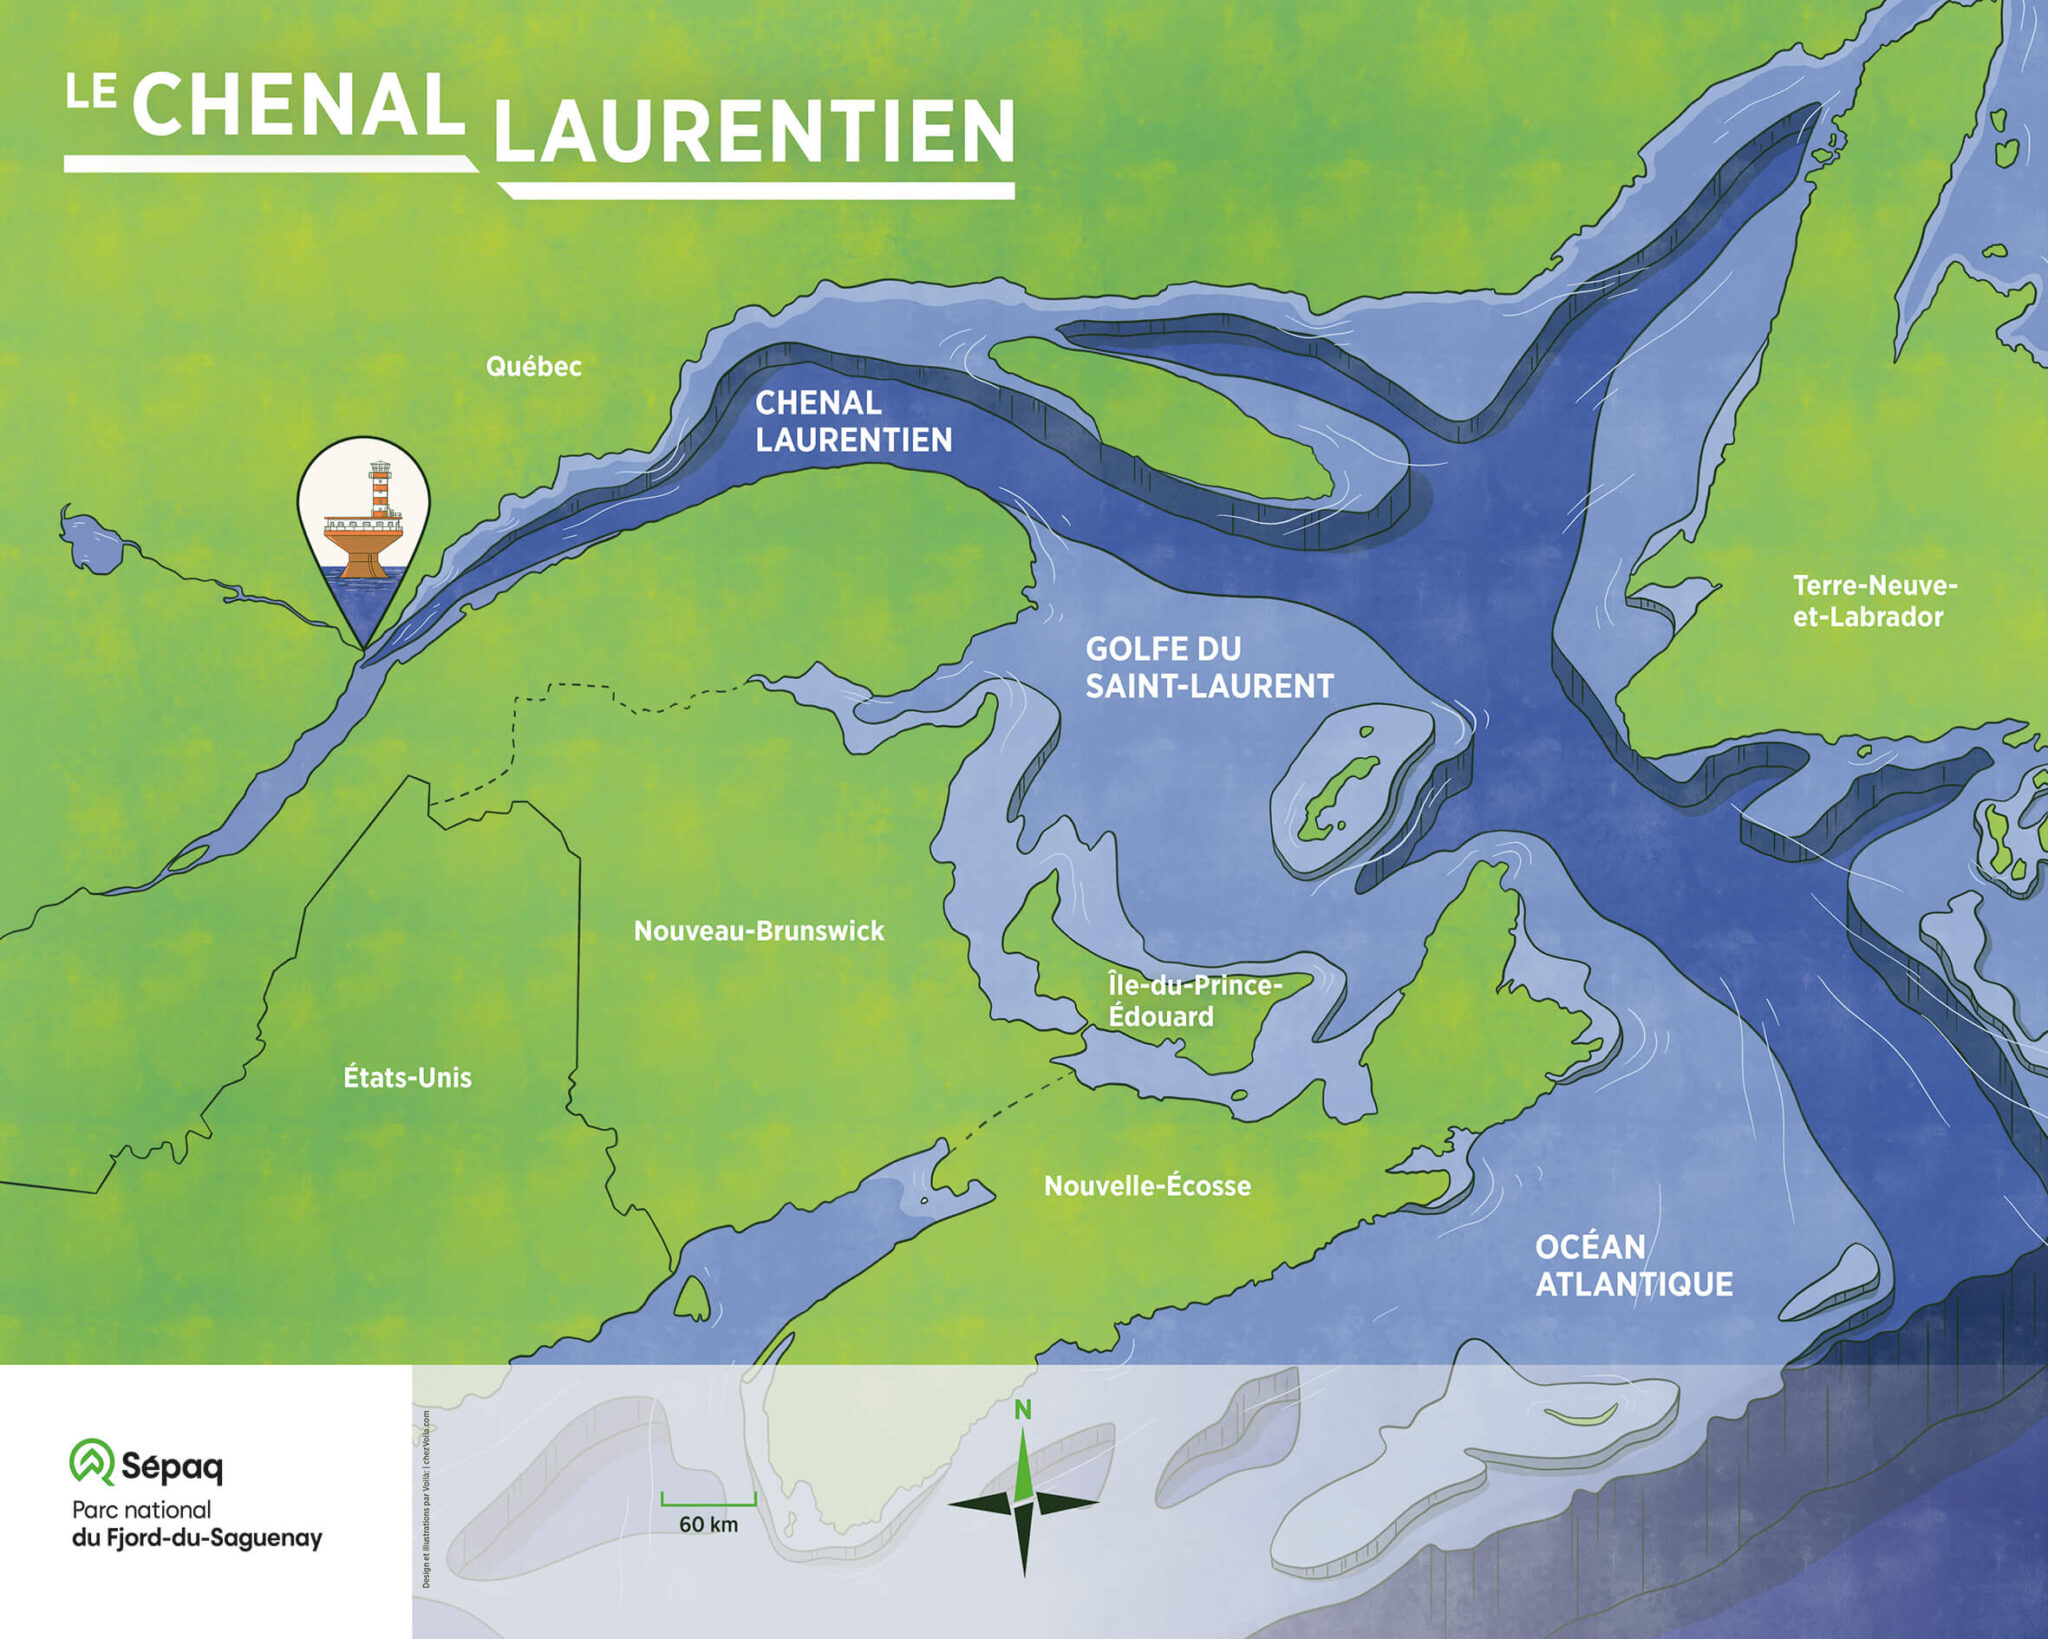 Le titre de l’image est “Le Chenal Laurentien”. Ce panneau présente une vue aérienne illustrée du chenal. Sur le continent, coloré en vert, les provinces du Canada autour du Chenal ainsi que la frontière avec les États-Unis servent de repères géographiques. Dans l’eau, colorée en bleu, le Chenal Laurentien, le Golfe du Saint-Laurent et l’océan Atlantique délimitent les régions marines. Cette image présente la profondeur de l’estuaire maritime. Les fonds marins y sont illustrés en transparence sous la surface de l’eau et les étages de profondeur sont exagérés. On voit ainsi que l’océan Atlantique est la partie la plus profonde, mais aussi que tout le chenal Laurentien est très creux et ce, jusqu’à sa pointe à Tadoussac. Tadoussac est pointé par une petite pastille qui contient une illustration du phare de Tadoussac, permettant au public de repérer où ils se trouvent. Au bas du panneau, une rose des vents précise que le Nord se trouve en direction du haut du panneau.